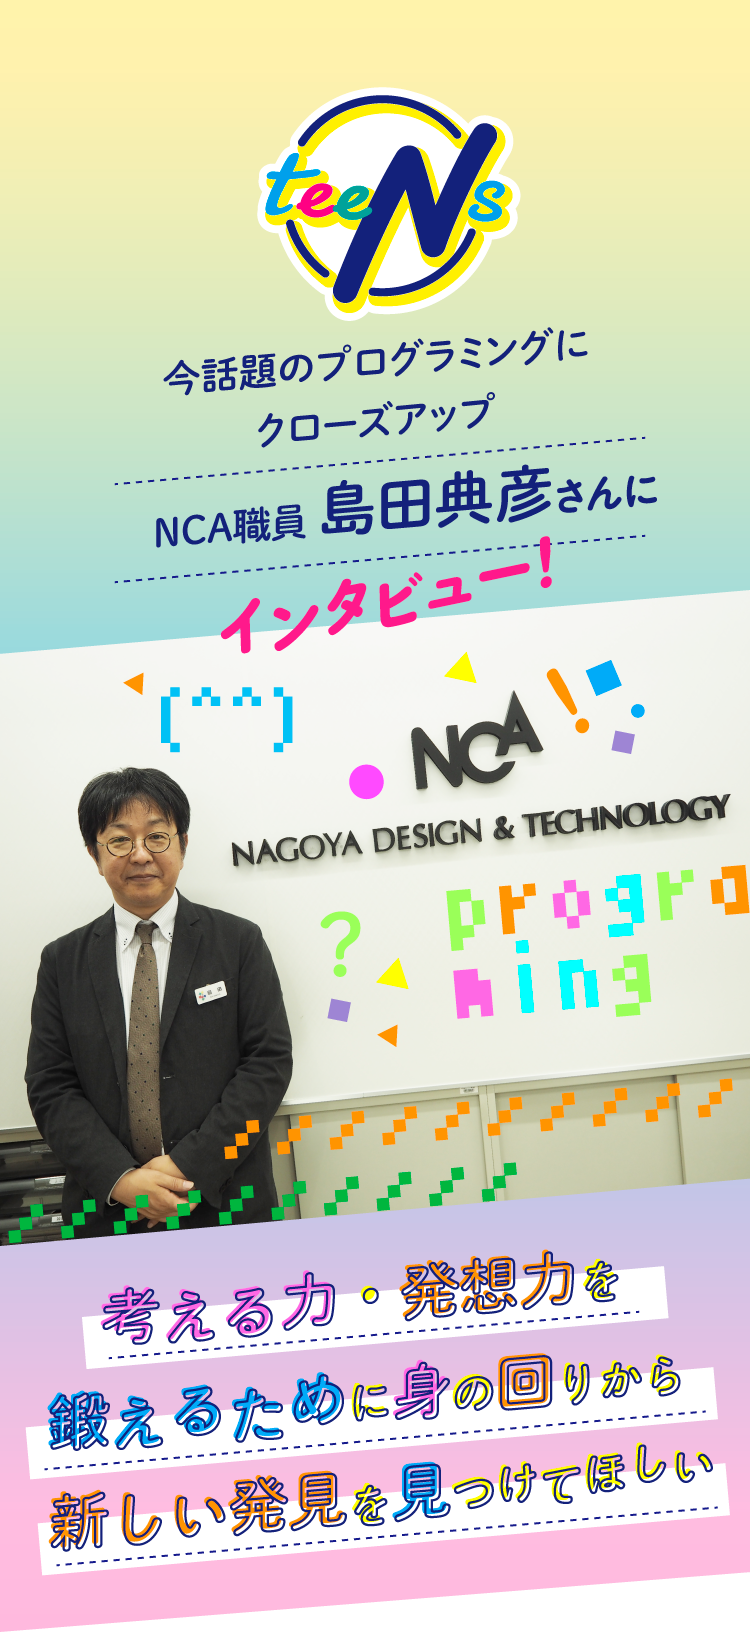 
今話題のプログラミングに
クローズアップ
NCA職員 島田典彦さんにインタビュー！
考える力・発想力を
鍛えるために身の回りから
新しい発見を見つけてほしい
